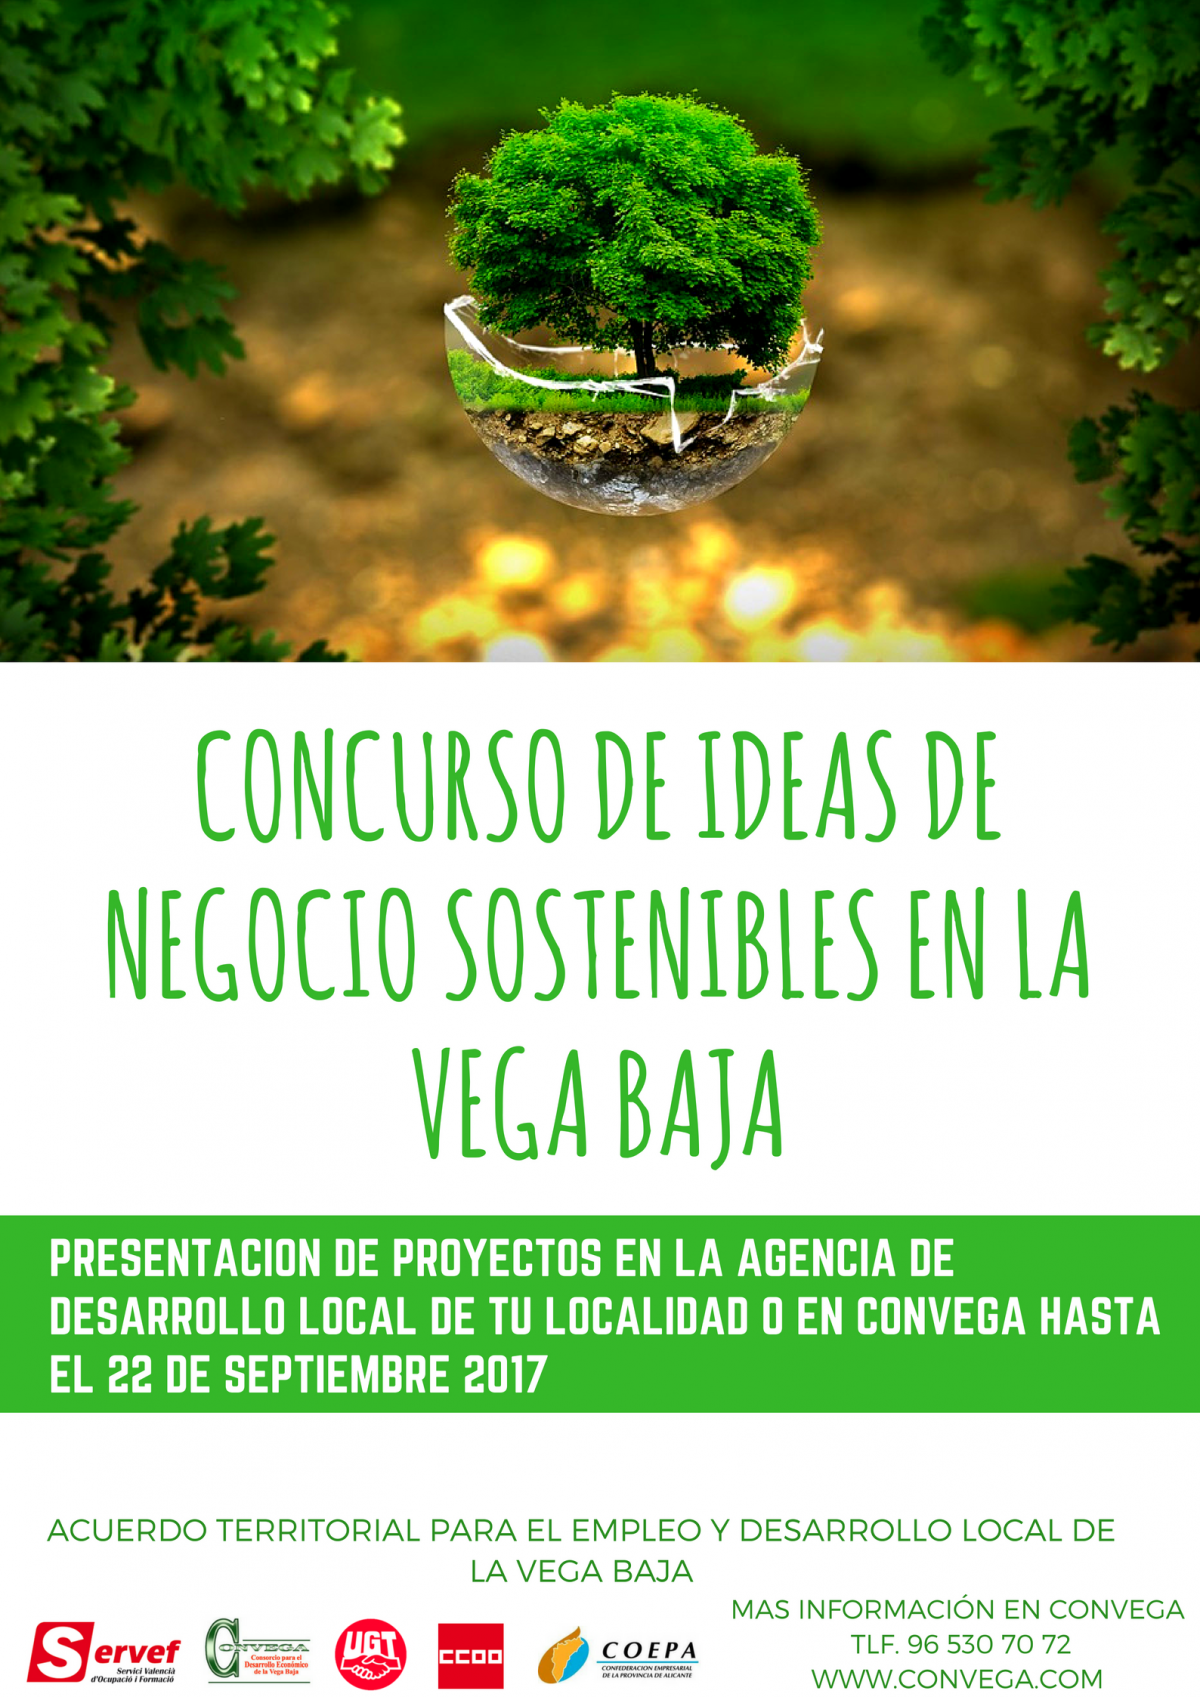 Concurso de ideas de negocio sostenibles en la Vega Baja